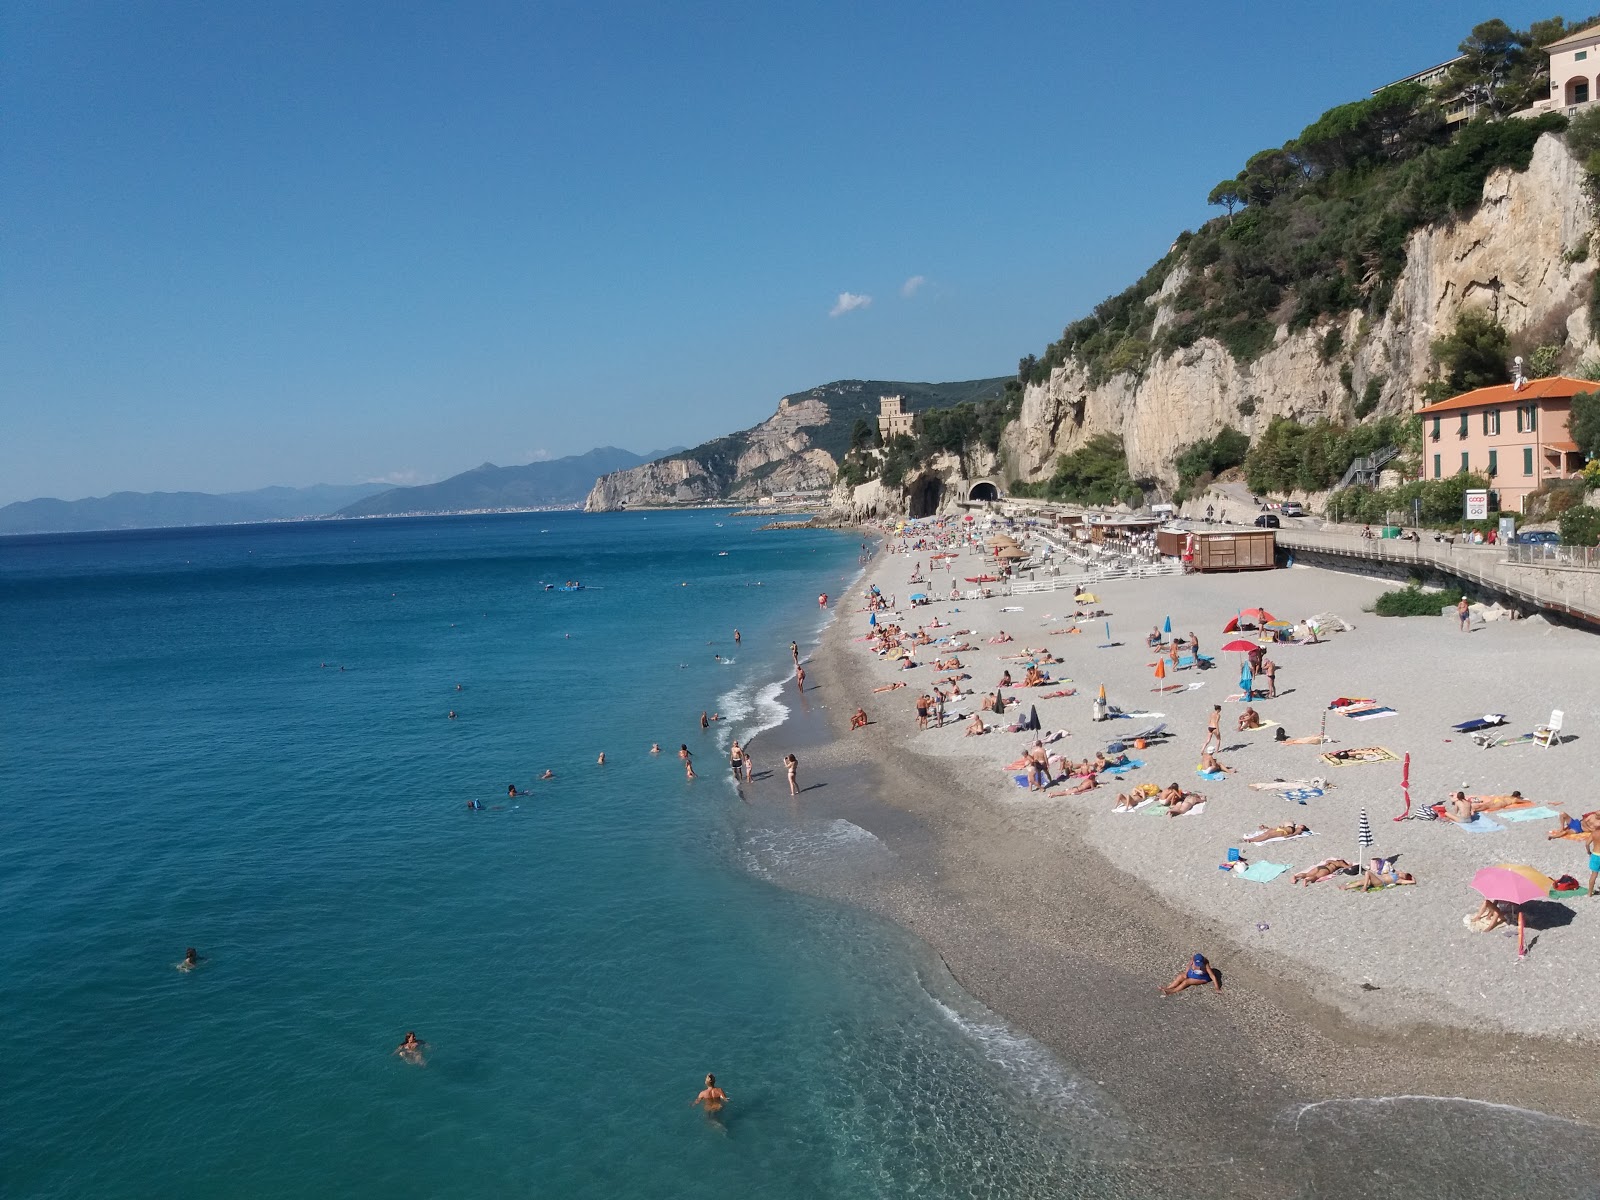 Photo of Spiaggia libera del Castelletto with gray fine pebble surface